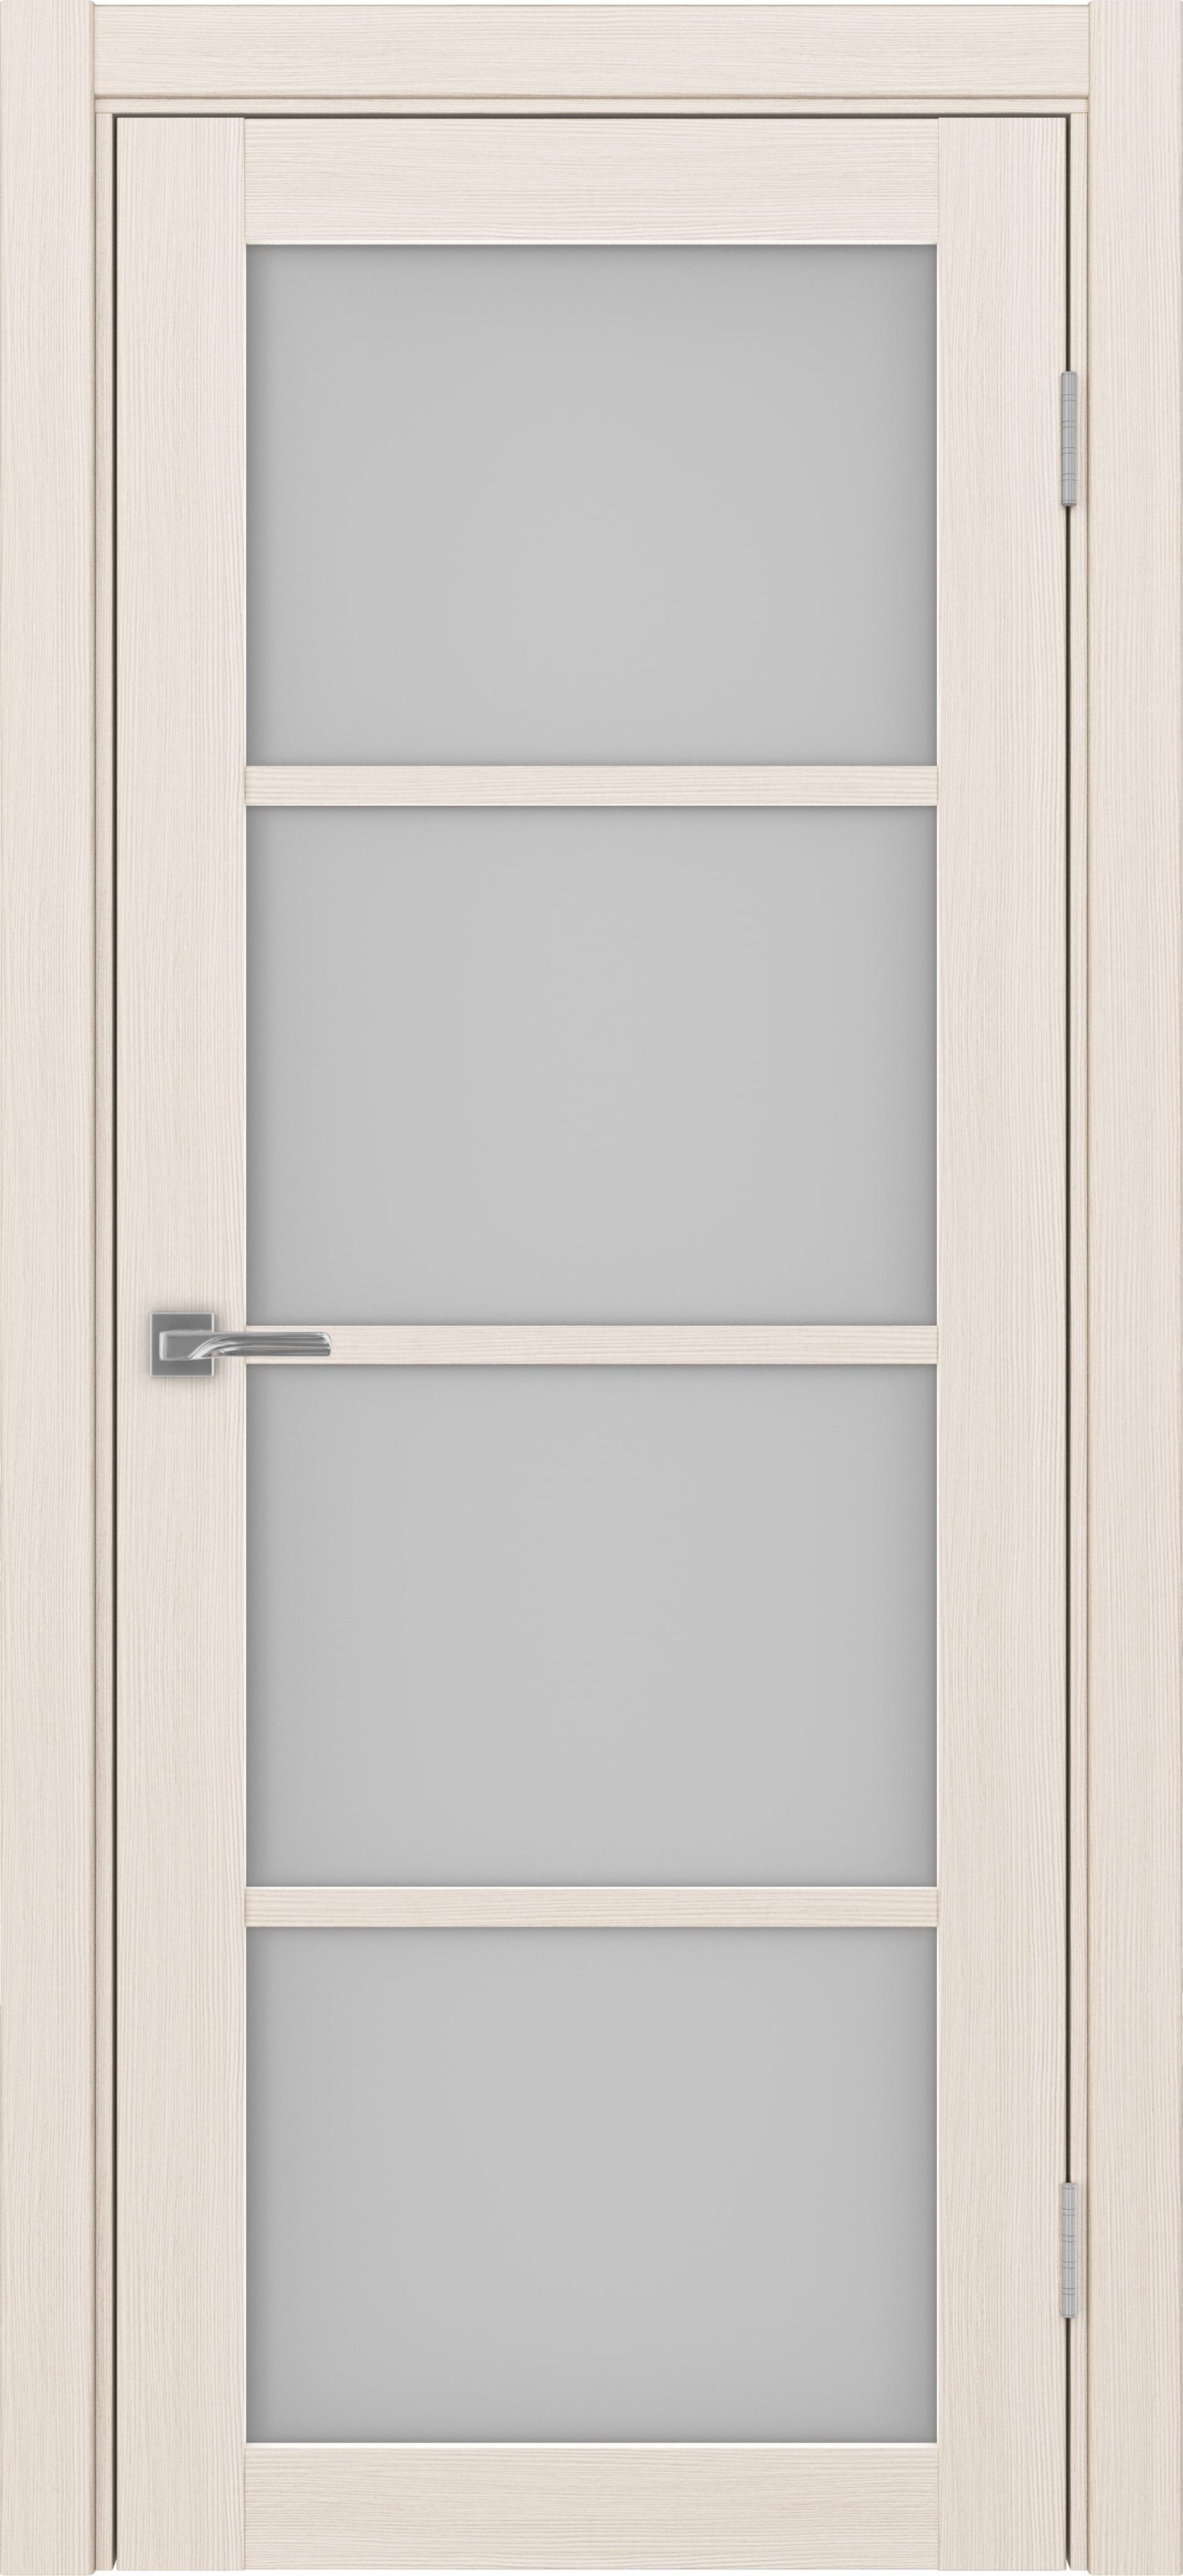 Межкомнатная дверь «Турин 540.2222 Ясень перламутровый» стекло сатин